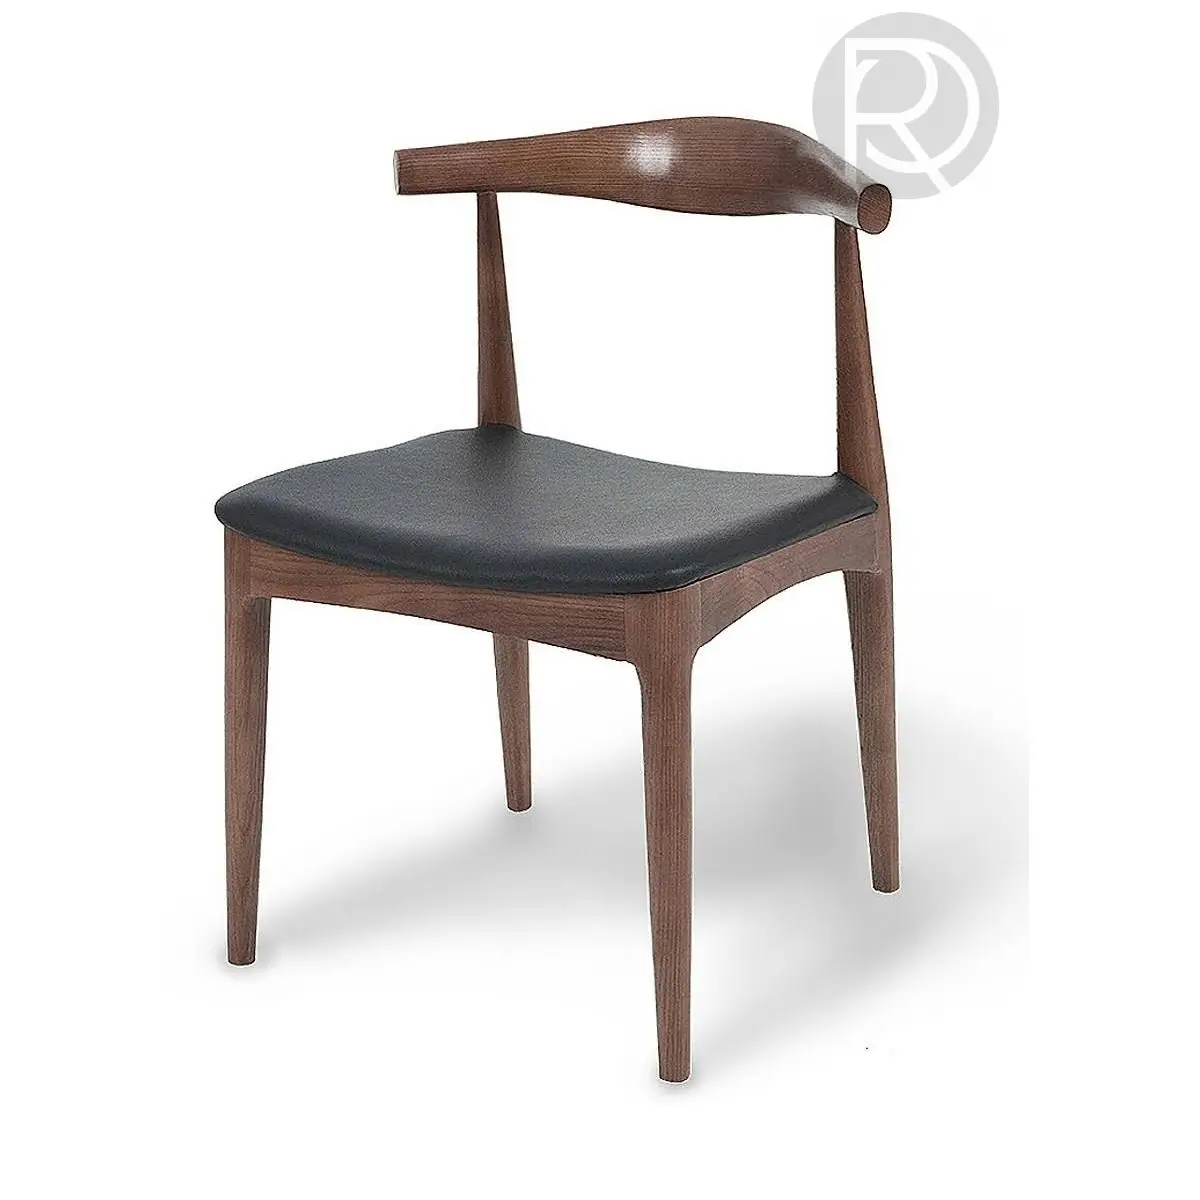 BELLU chair by Romatti